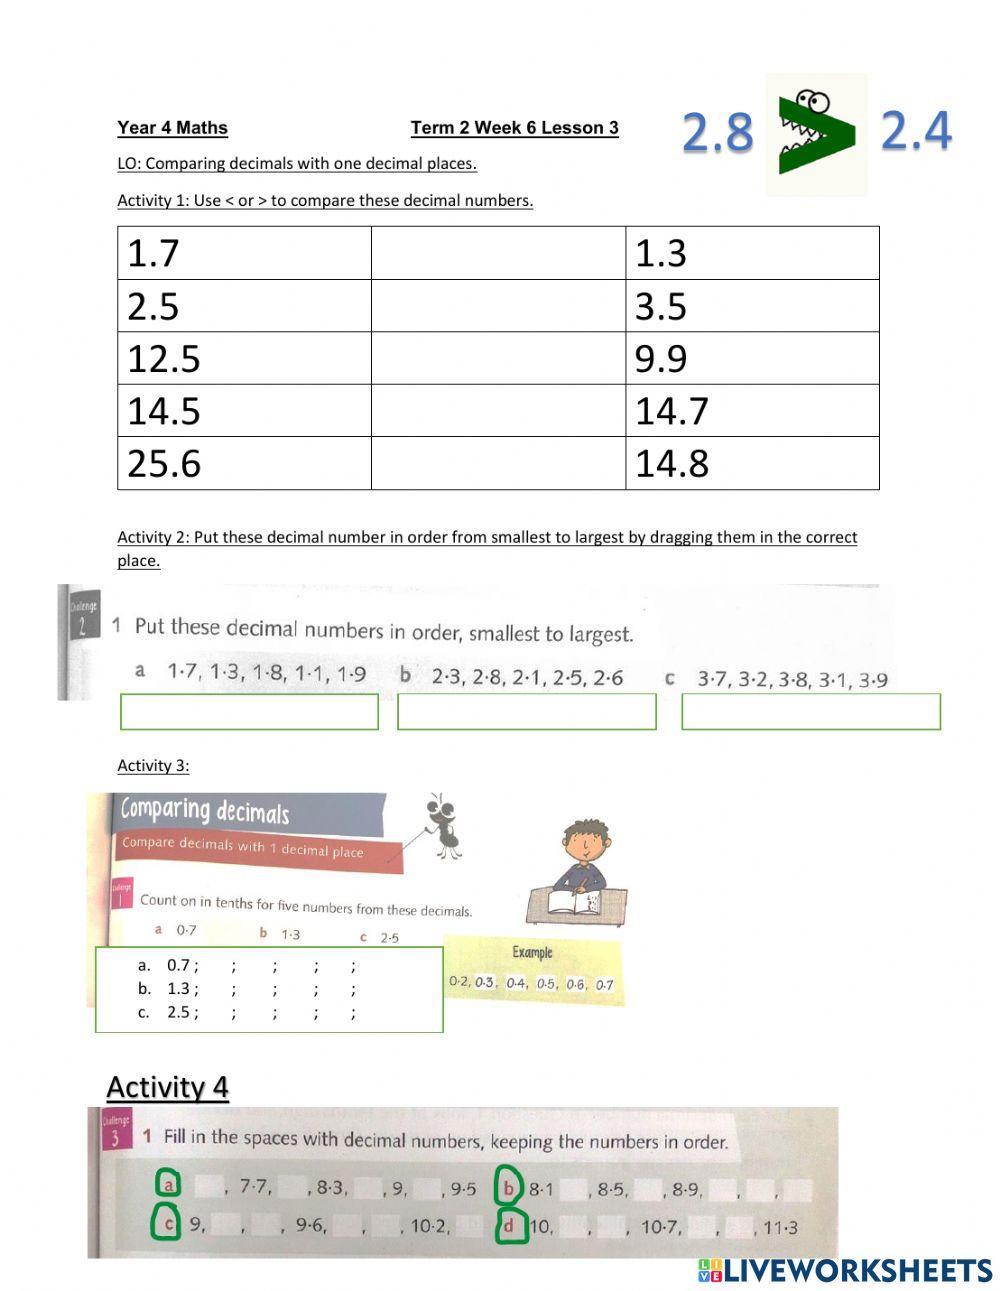 DIS Maths week 6 lesson 3